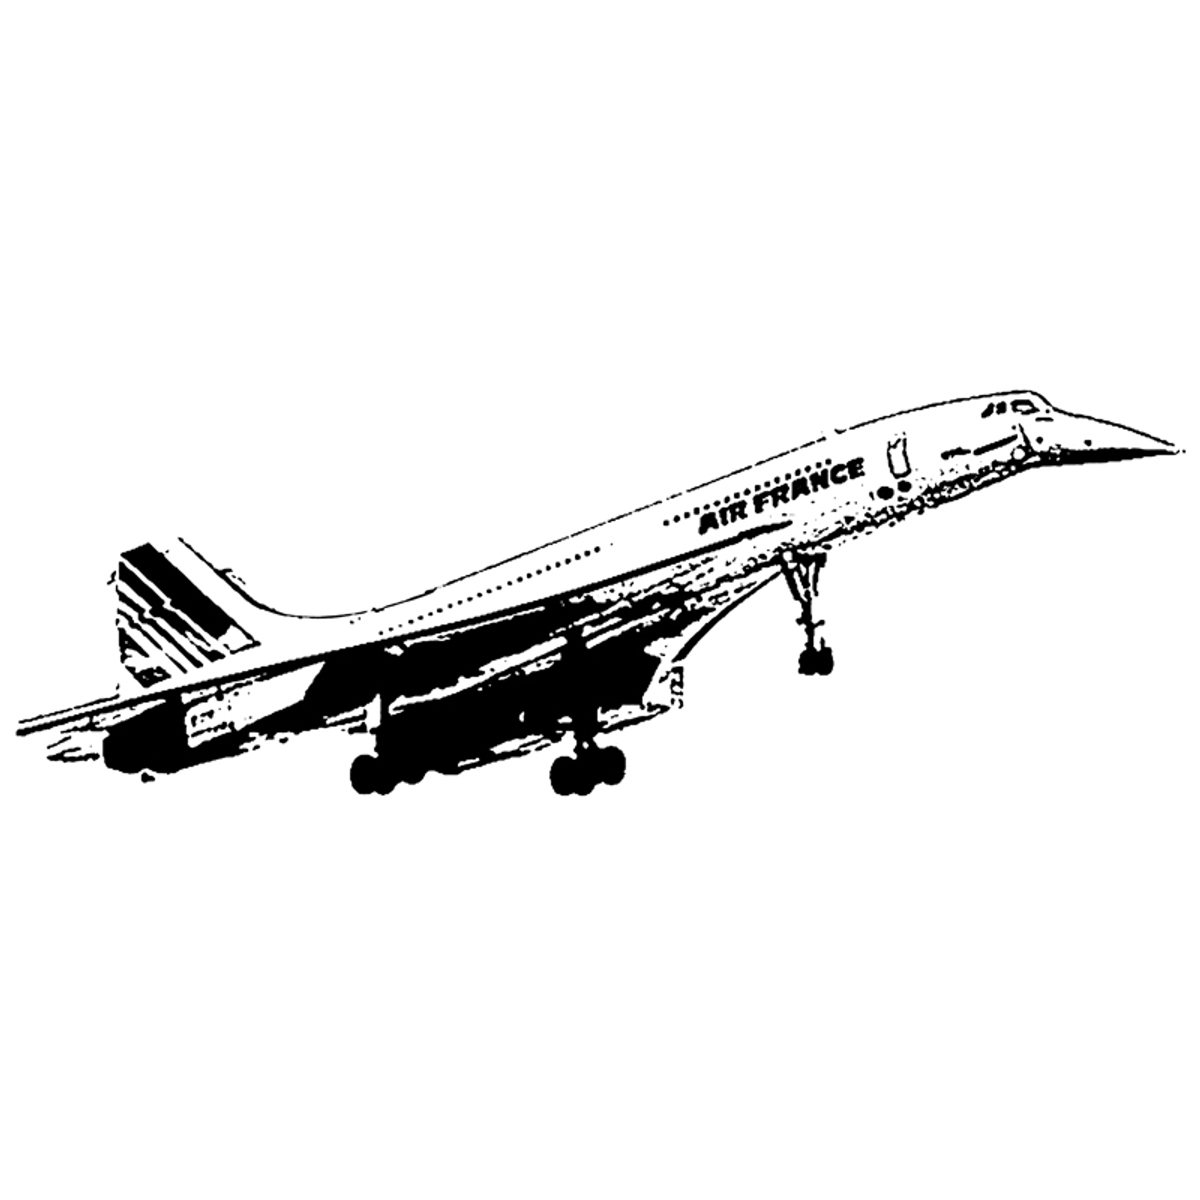 1969, Concorde